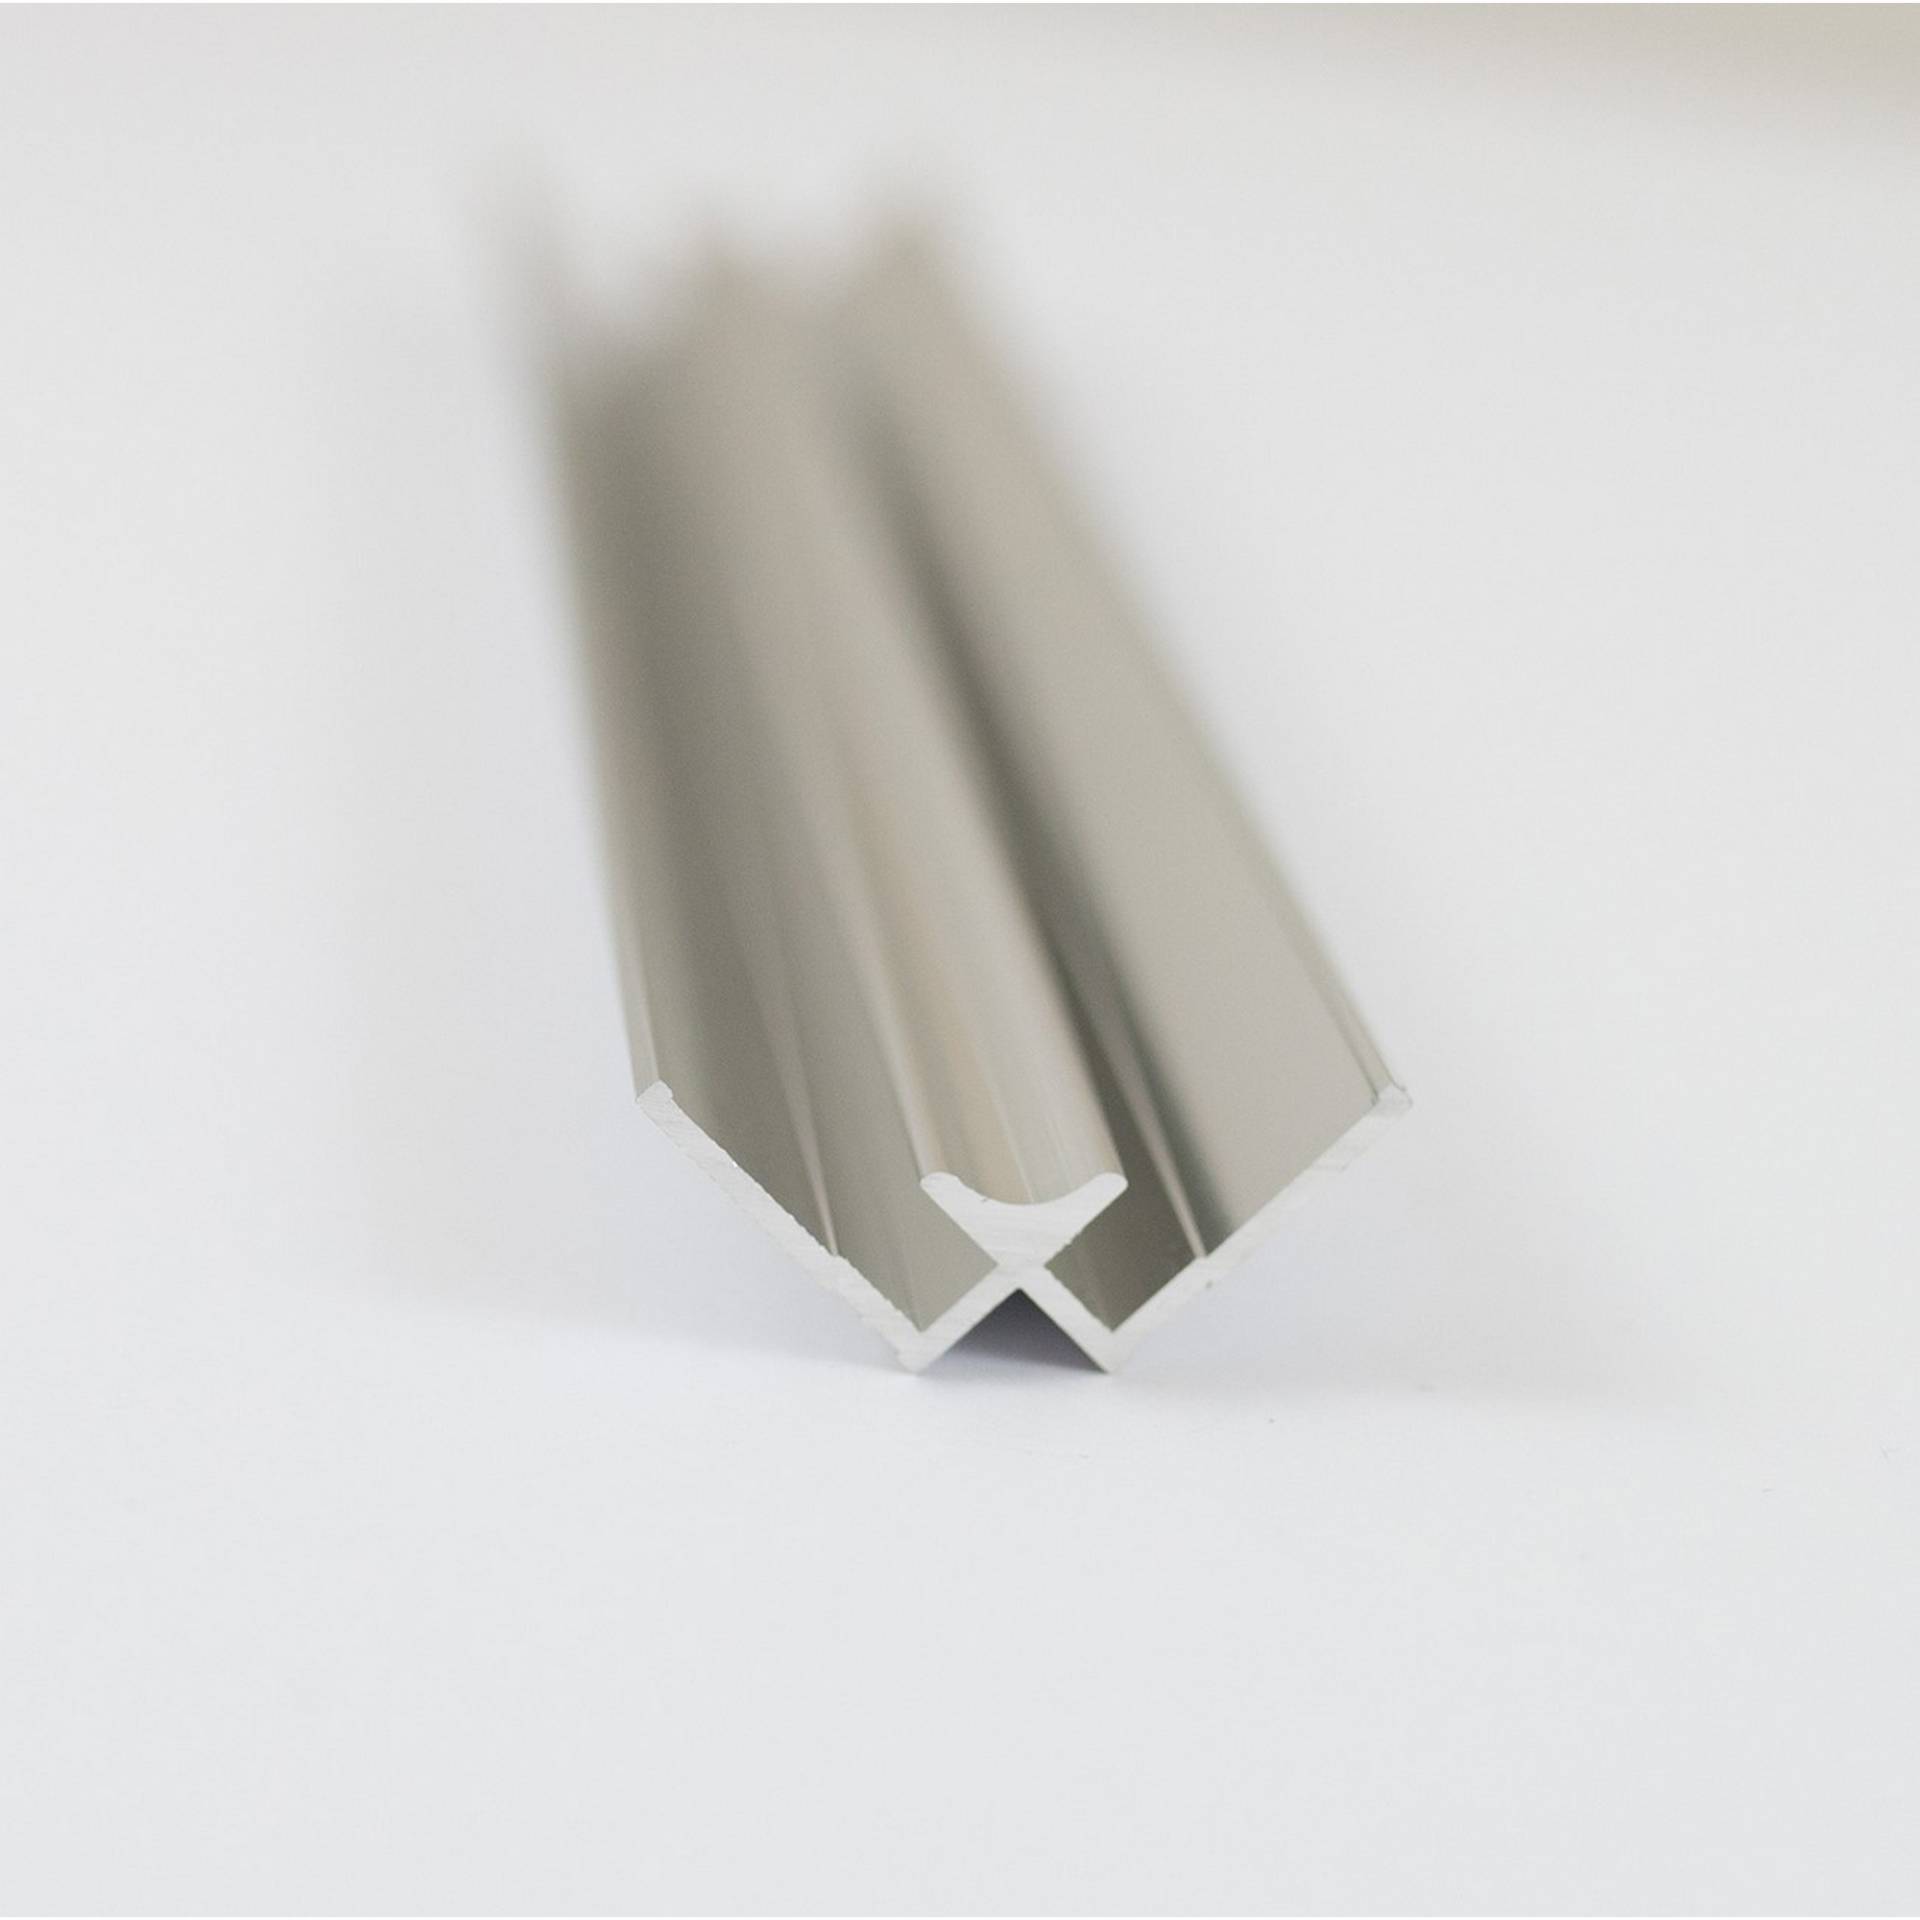 Breuer Eck-Verbindungsprofil für 'DecoDesign' Rückwand innen, alu-chromeffekt 2100 mm von Breuer